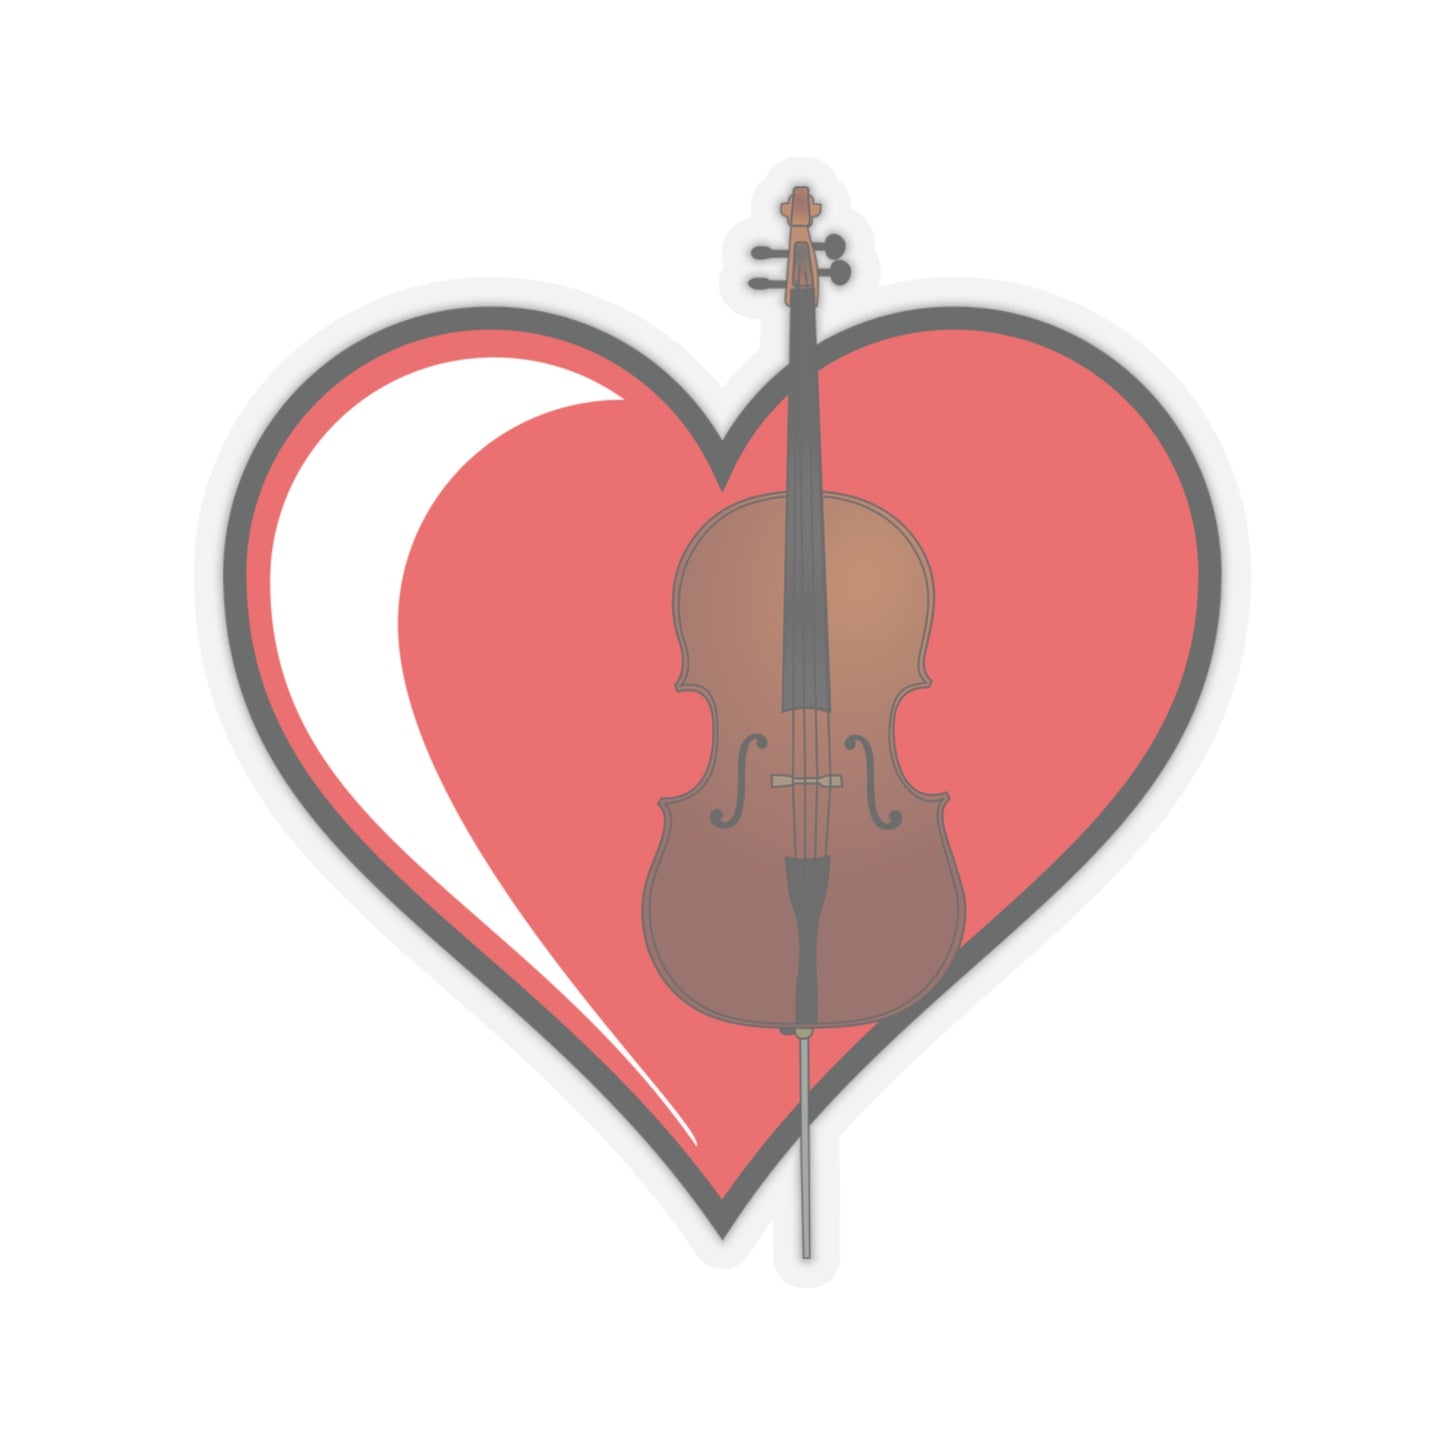 Cello Heart